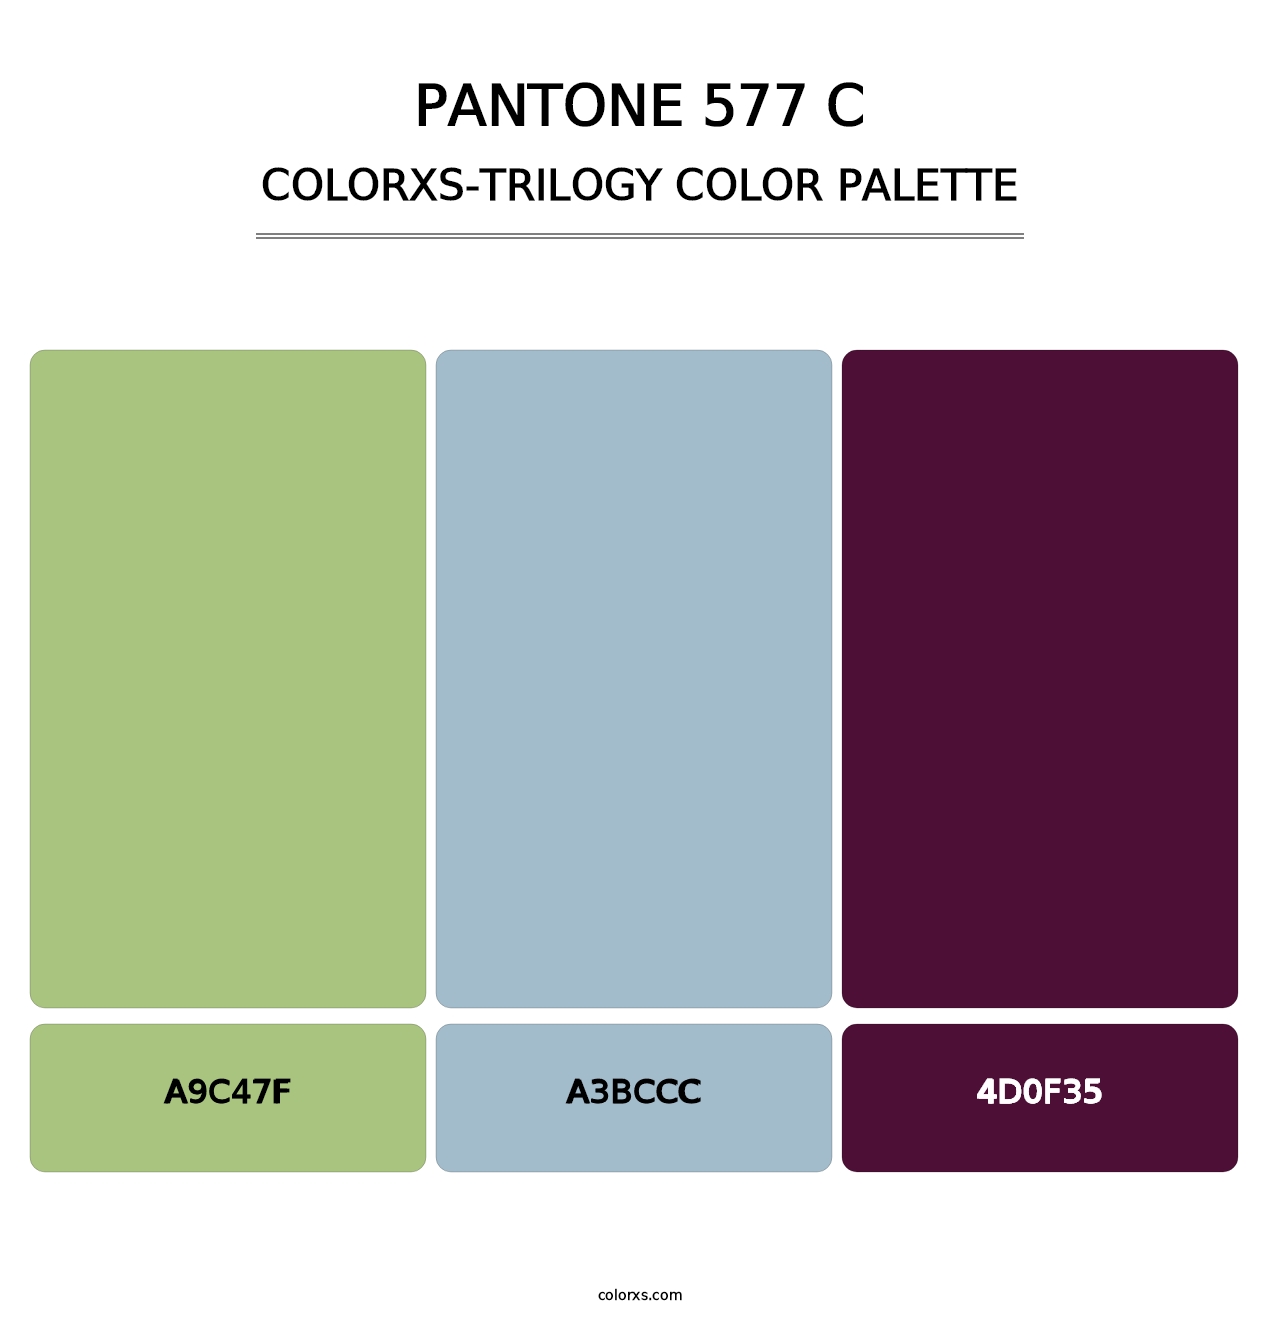 PANTONE 577 C - Colorxs Trilogy Palette